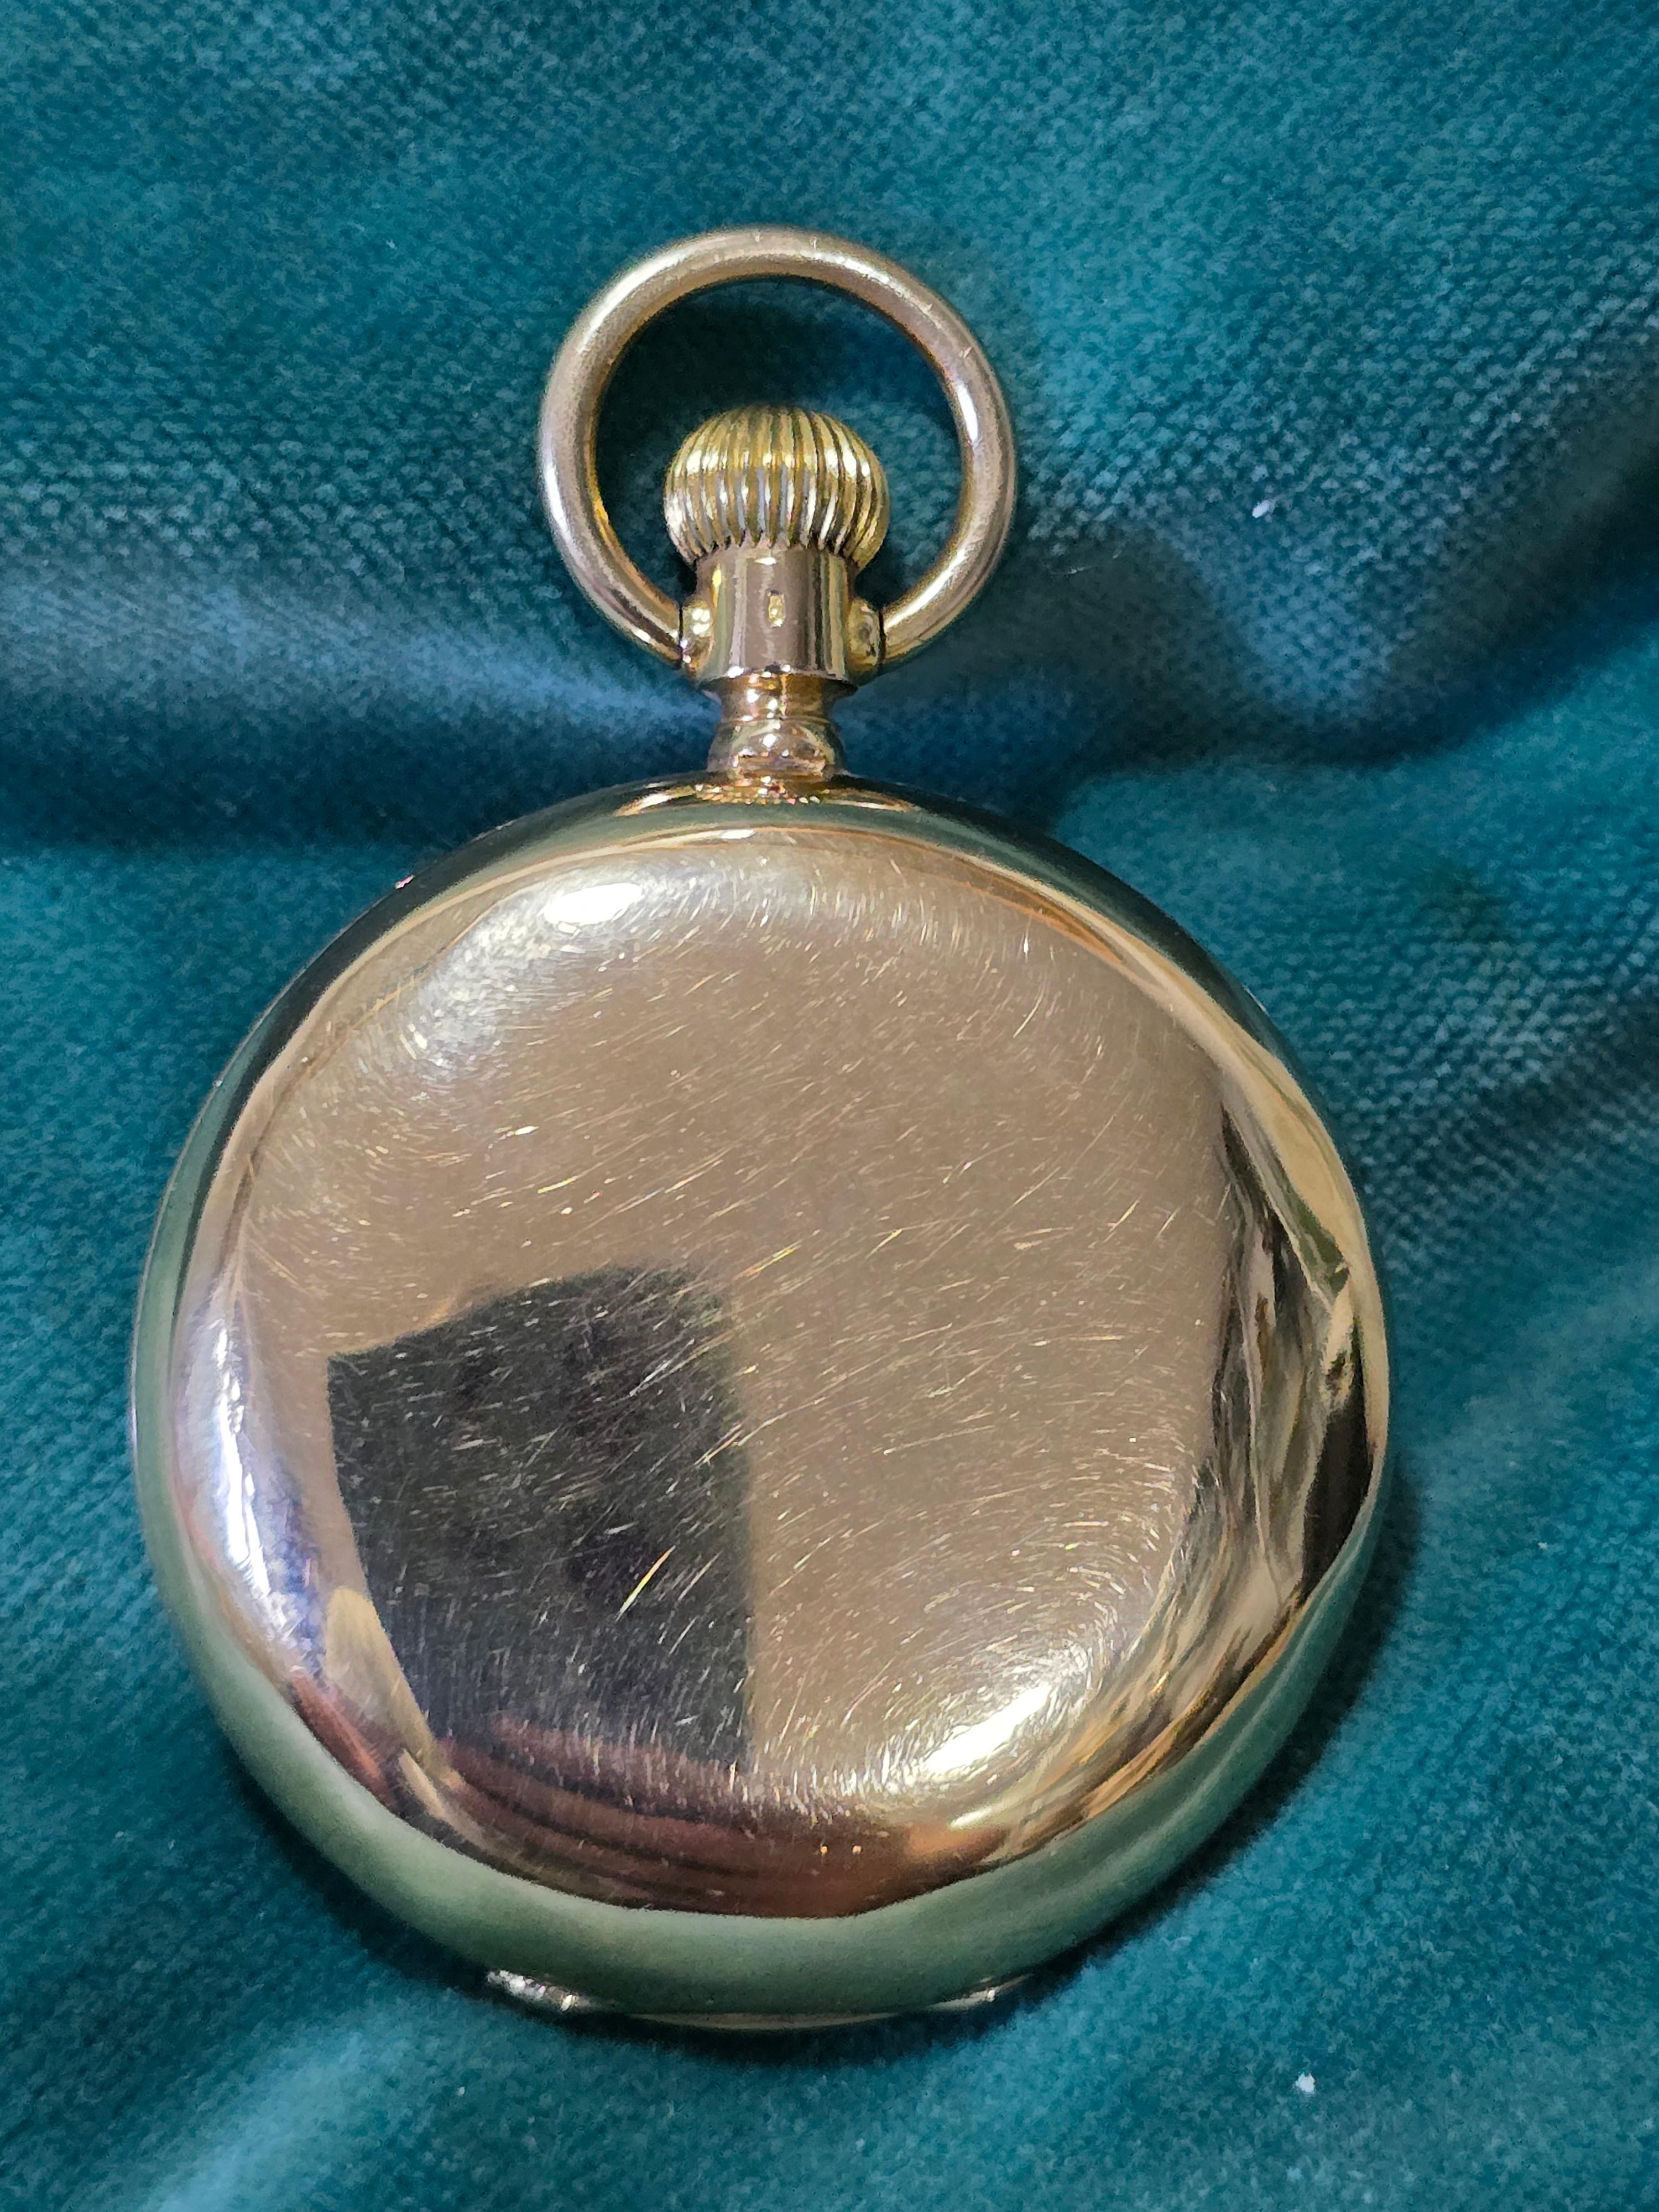 Entdecken Sie ein Stück zeitloser Eleganz mit unserer exquisiten Taschenuhr aus 18 Karat Gold aus der Zeit um 1900! ⌚️

Dieser elegante, mit viel Liebe zum Detail gefertigte Zeitmesser verfügt auf der einen Seite über ein klassisches